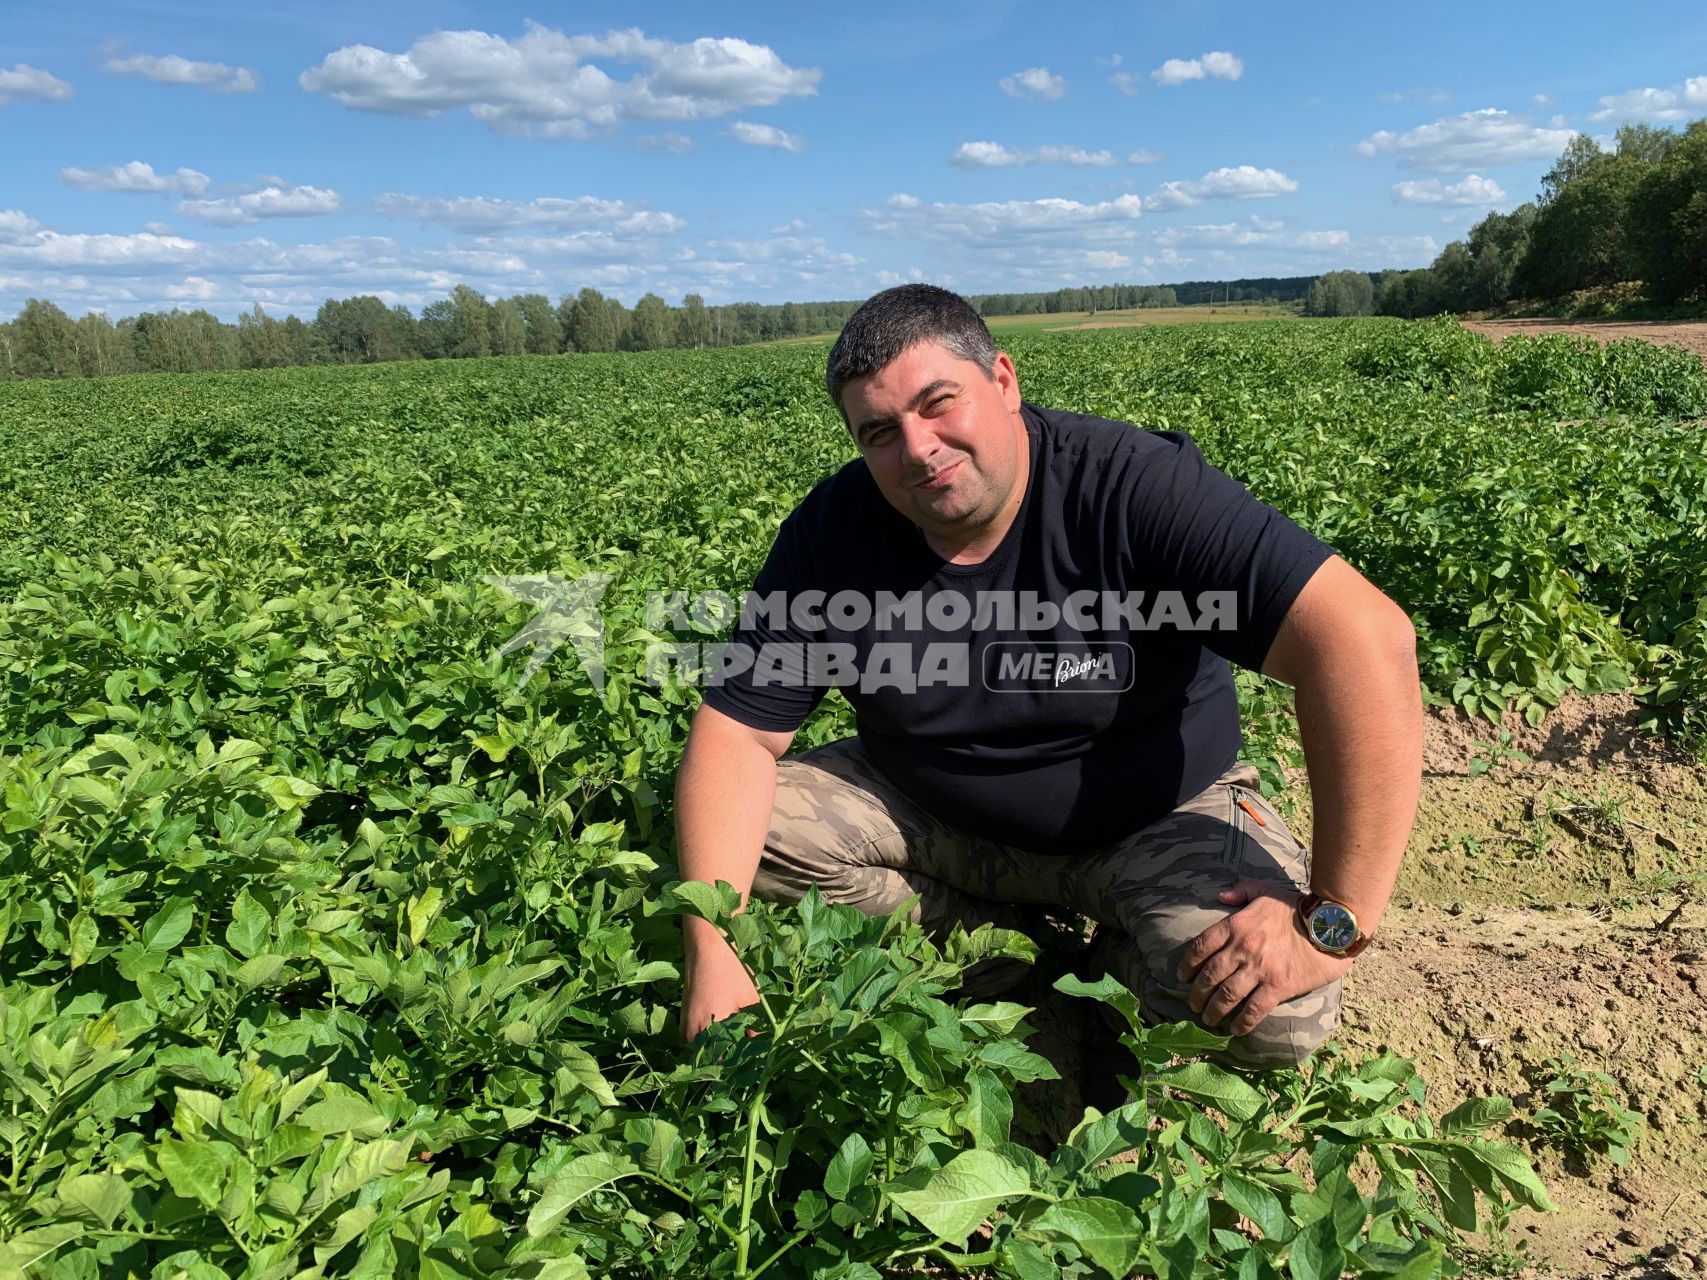 Сельское хозяйство в Тверской области